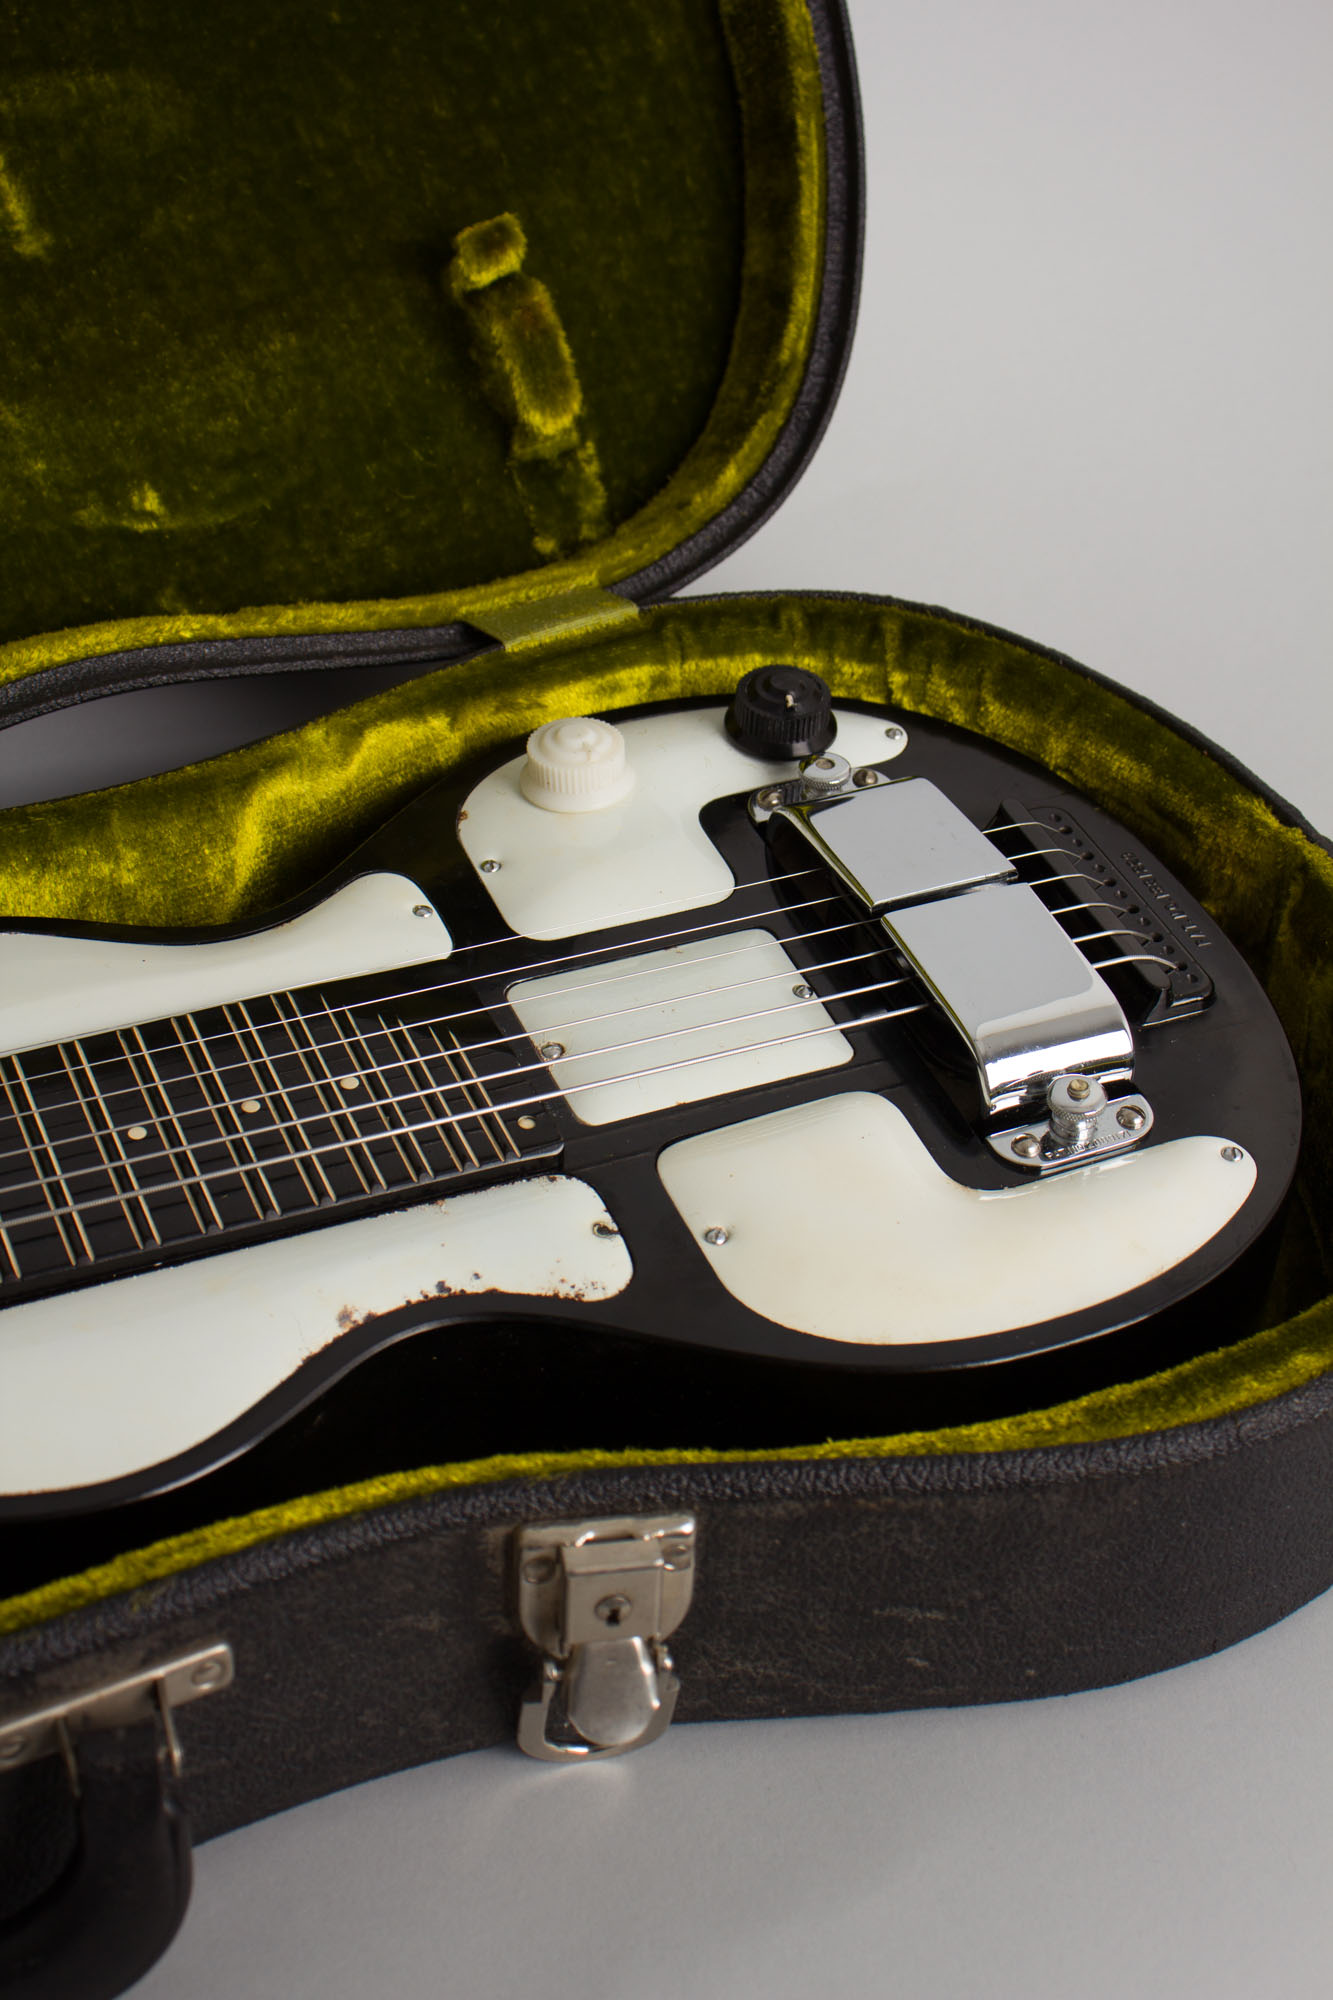 Rickenbacker Model B-6 Lap Steel Electric Guitar (1940) | RetroFret